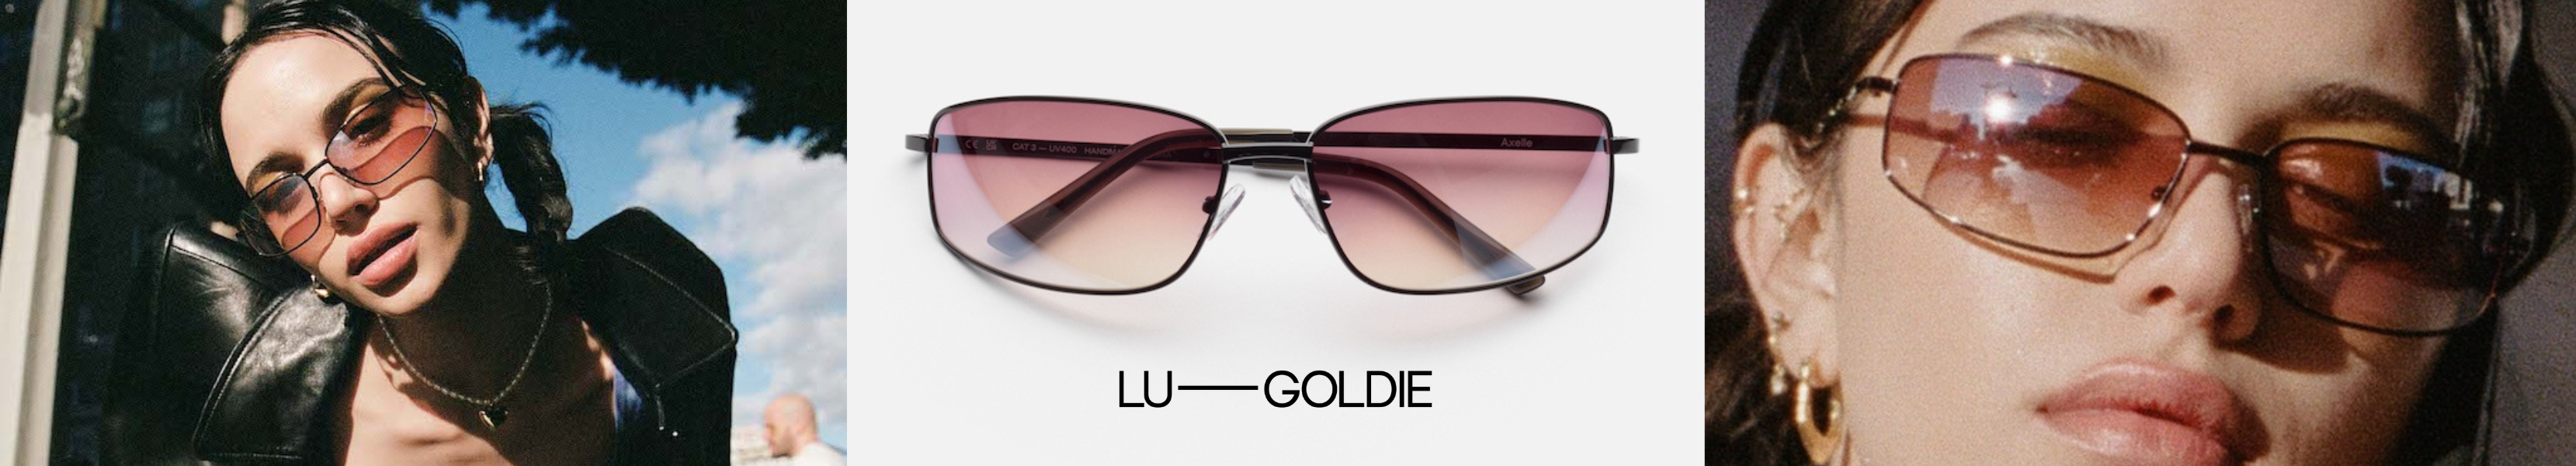 Lu Goldie Eyewear